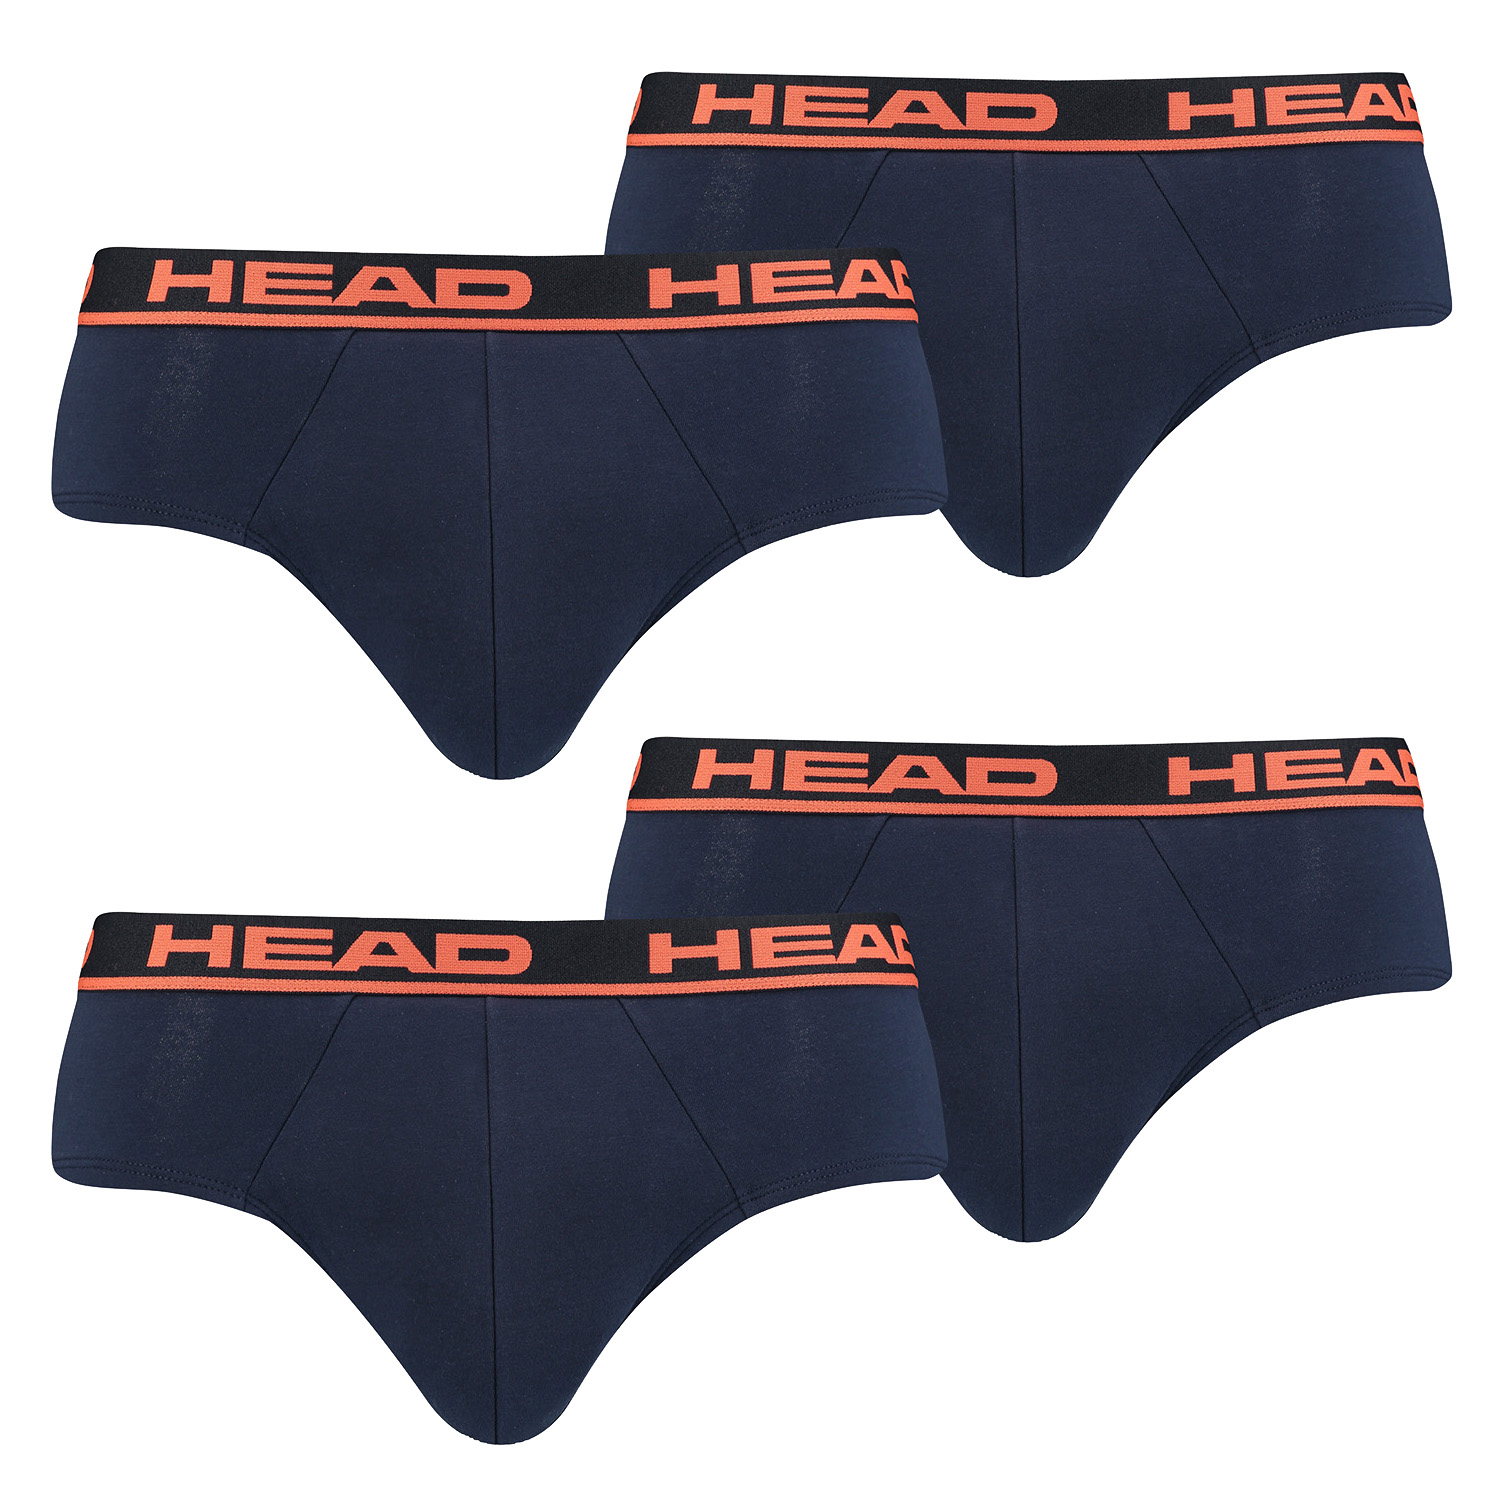 HEAD Herren Basic Brief Pant Slip Unterwäsche Unterhose 6 er Pack , Farbe:003 - Blue / Orange, Bekleidungsgröße:L